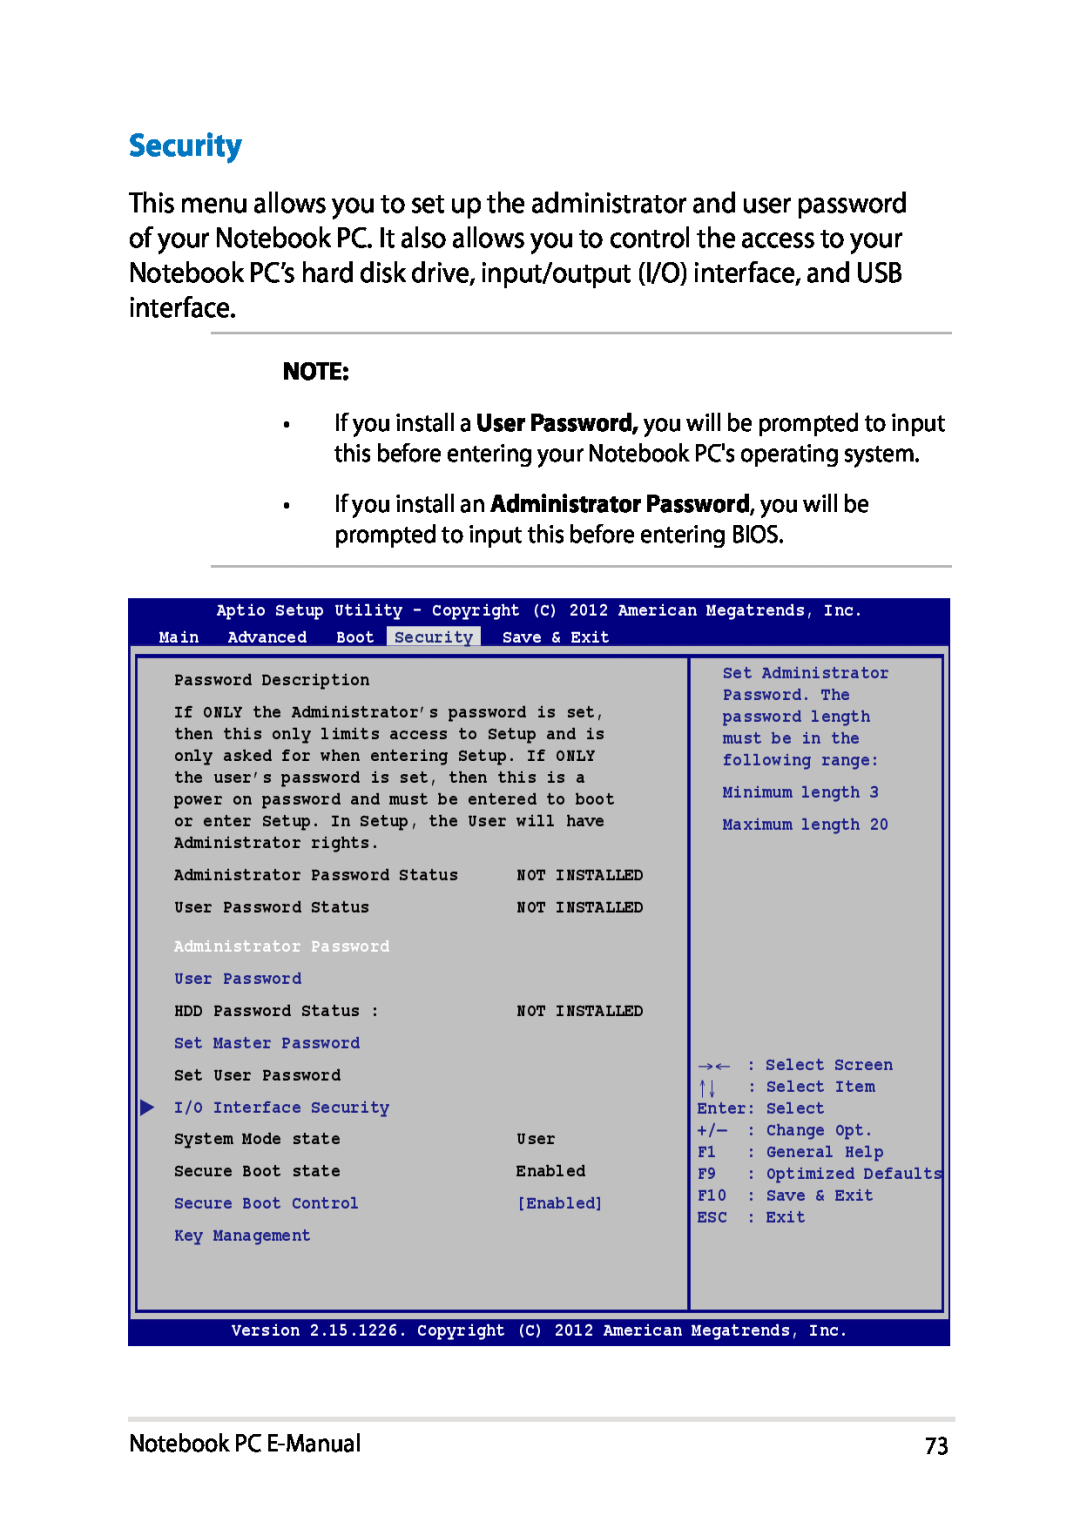 Asus E8438 manual Security, Notebook PC E-Manual, Password Description 